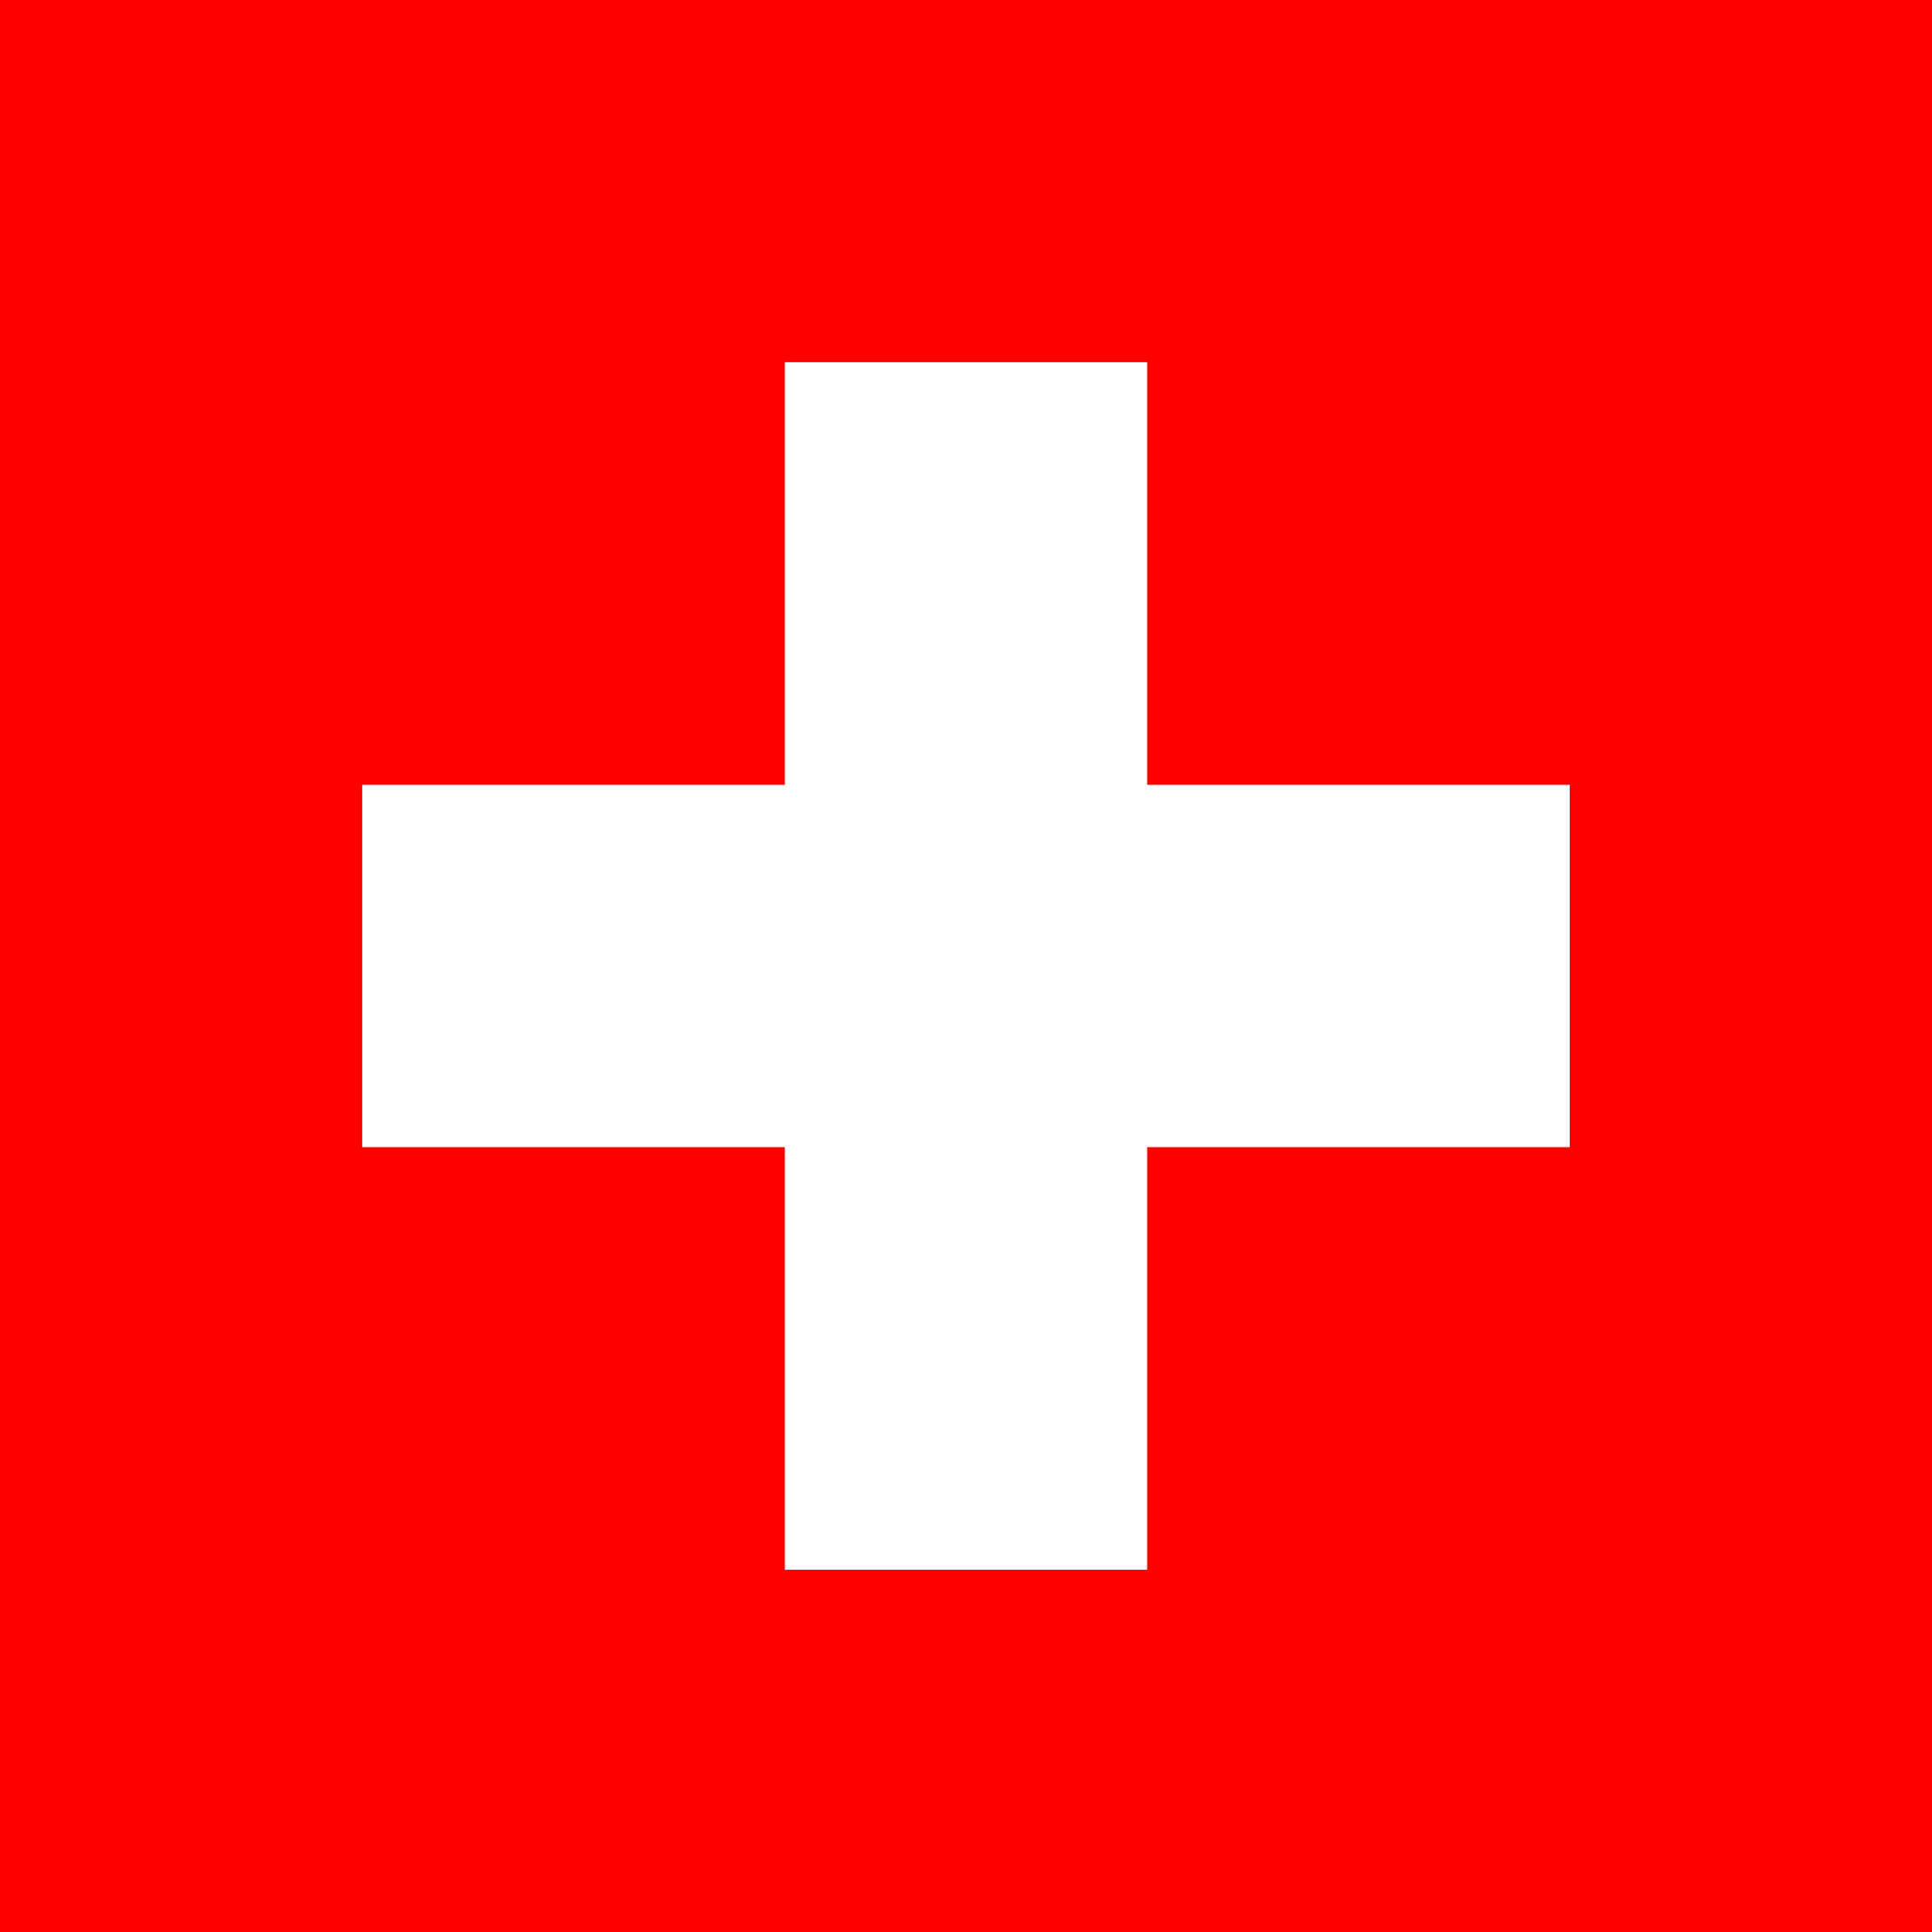 スイス国旗の特徴や意味 由来 誕生年 フリーイラストや画像を徹底的